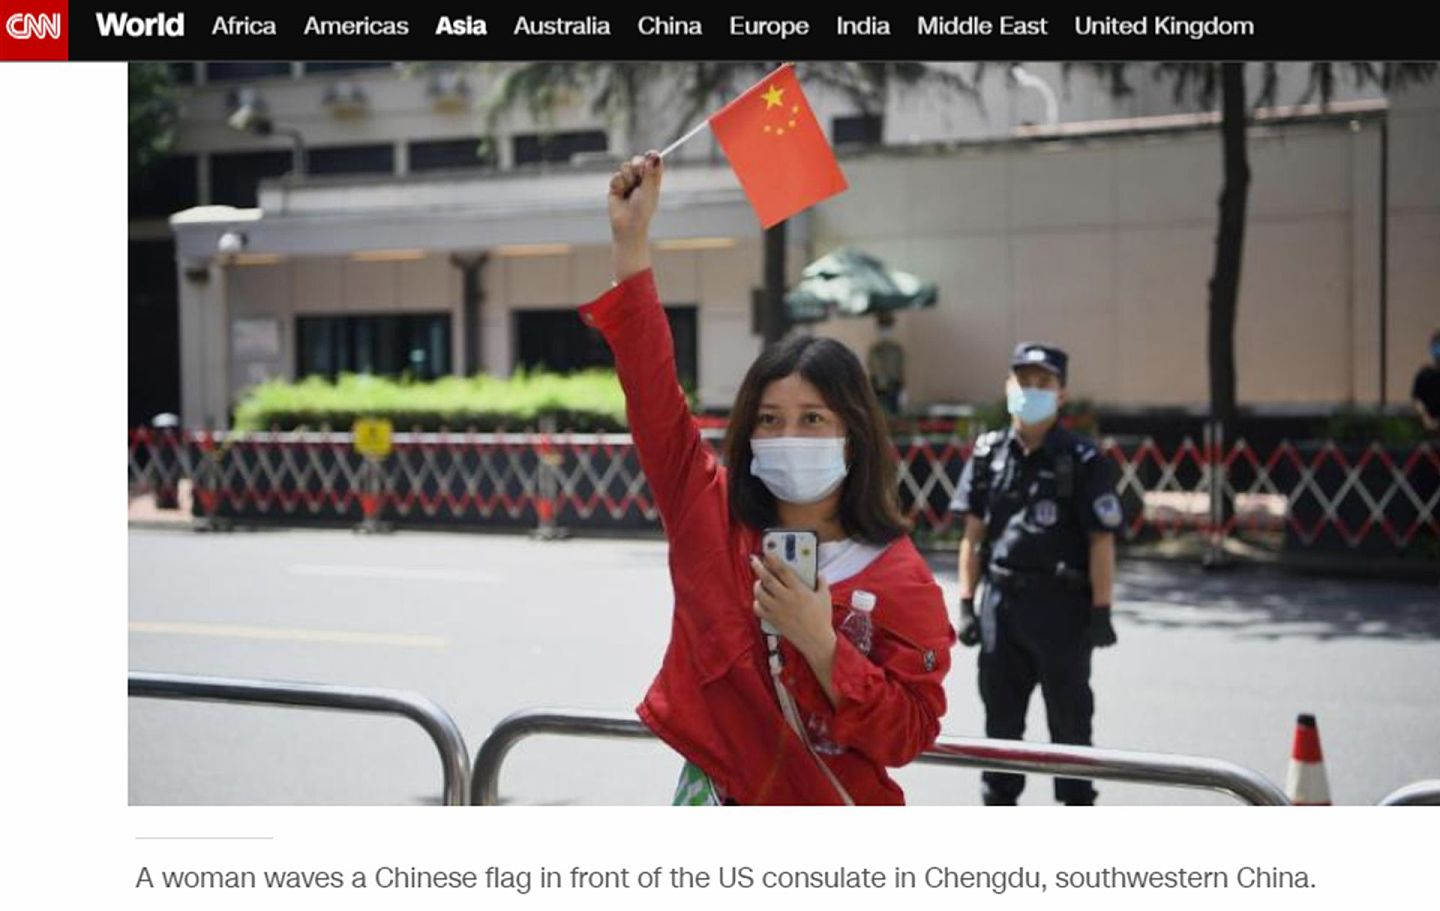 作为反制，中方宣布关闭美国驻成都总领事馆。图为一位中国女孩在美国驻成都领事馆前举起中国国旗，这一幕正好被CNN直播镜头捕捉。（CNN新闻网截图）